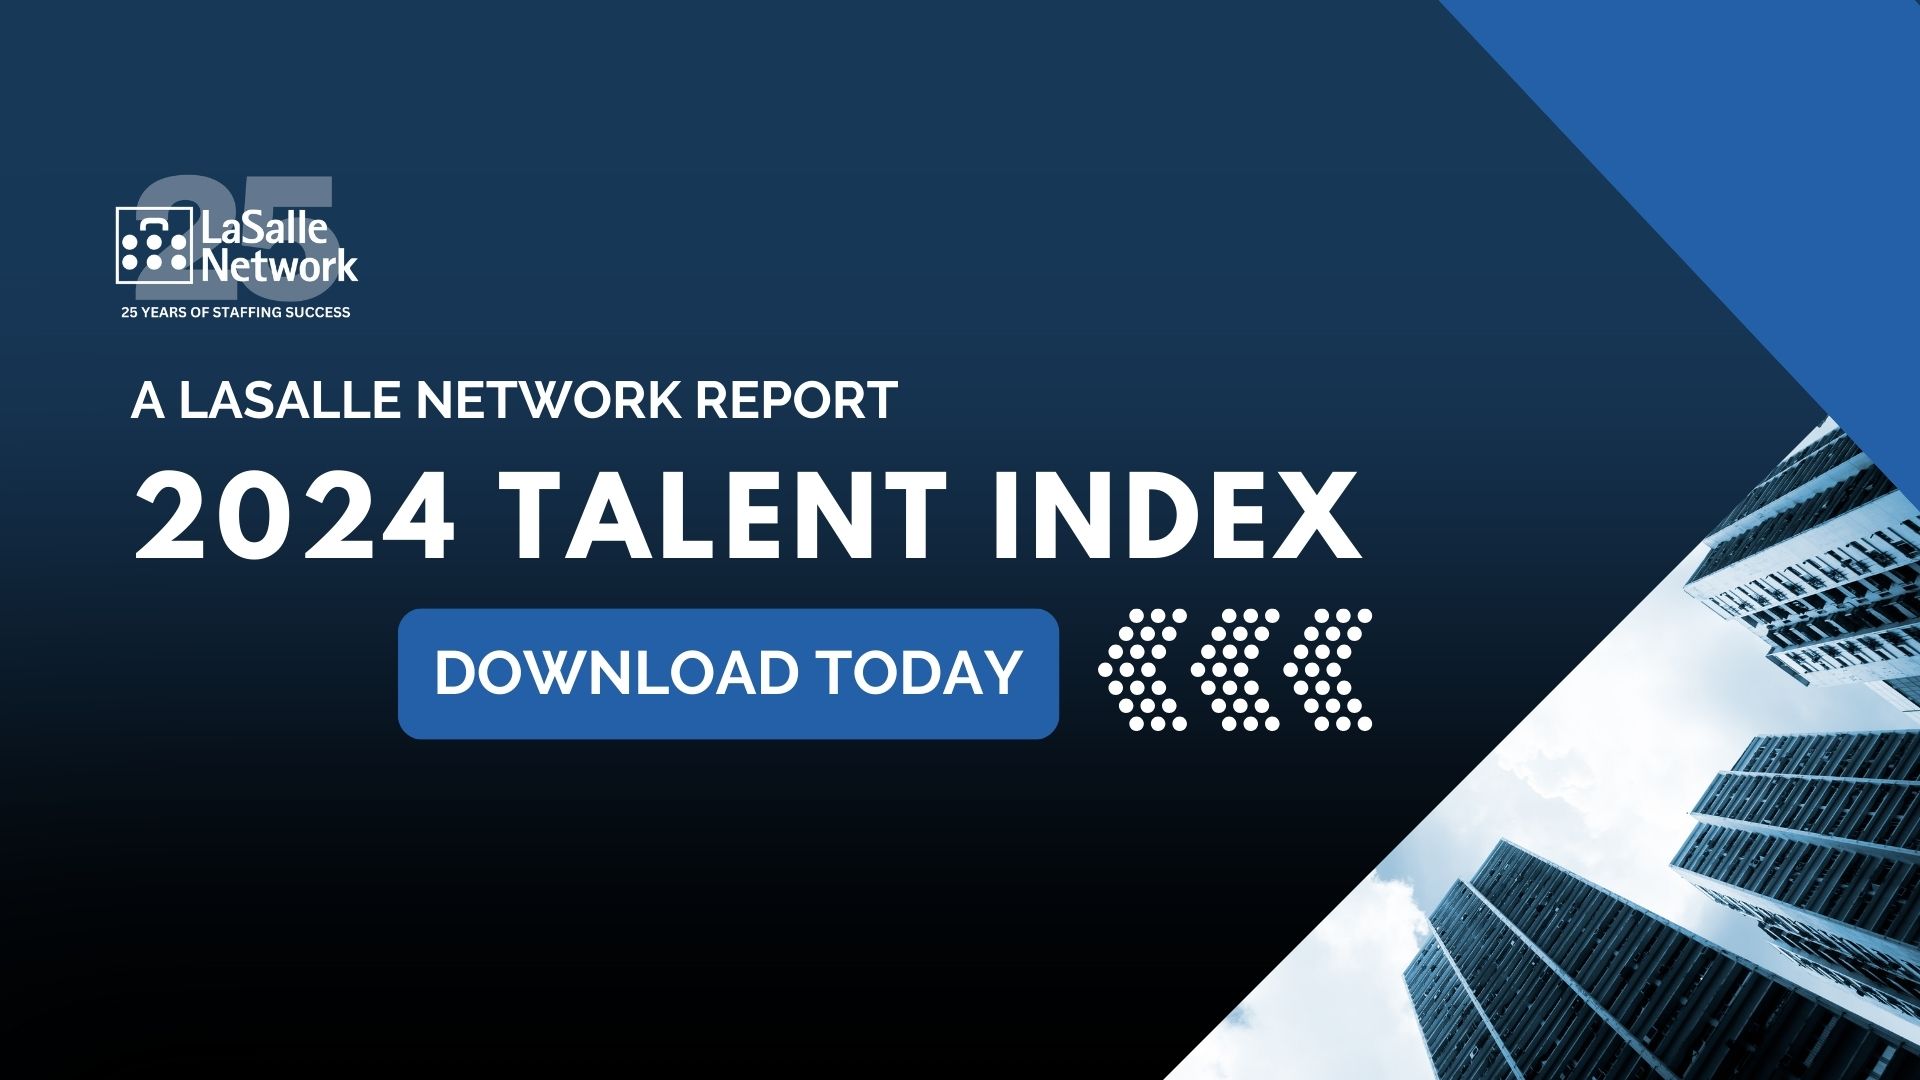 2024 Talent Index Promotion (1920 x 1080 px)